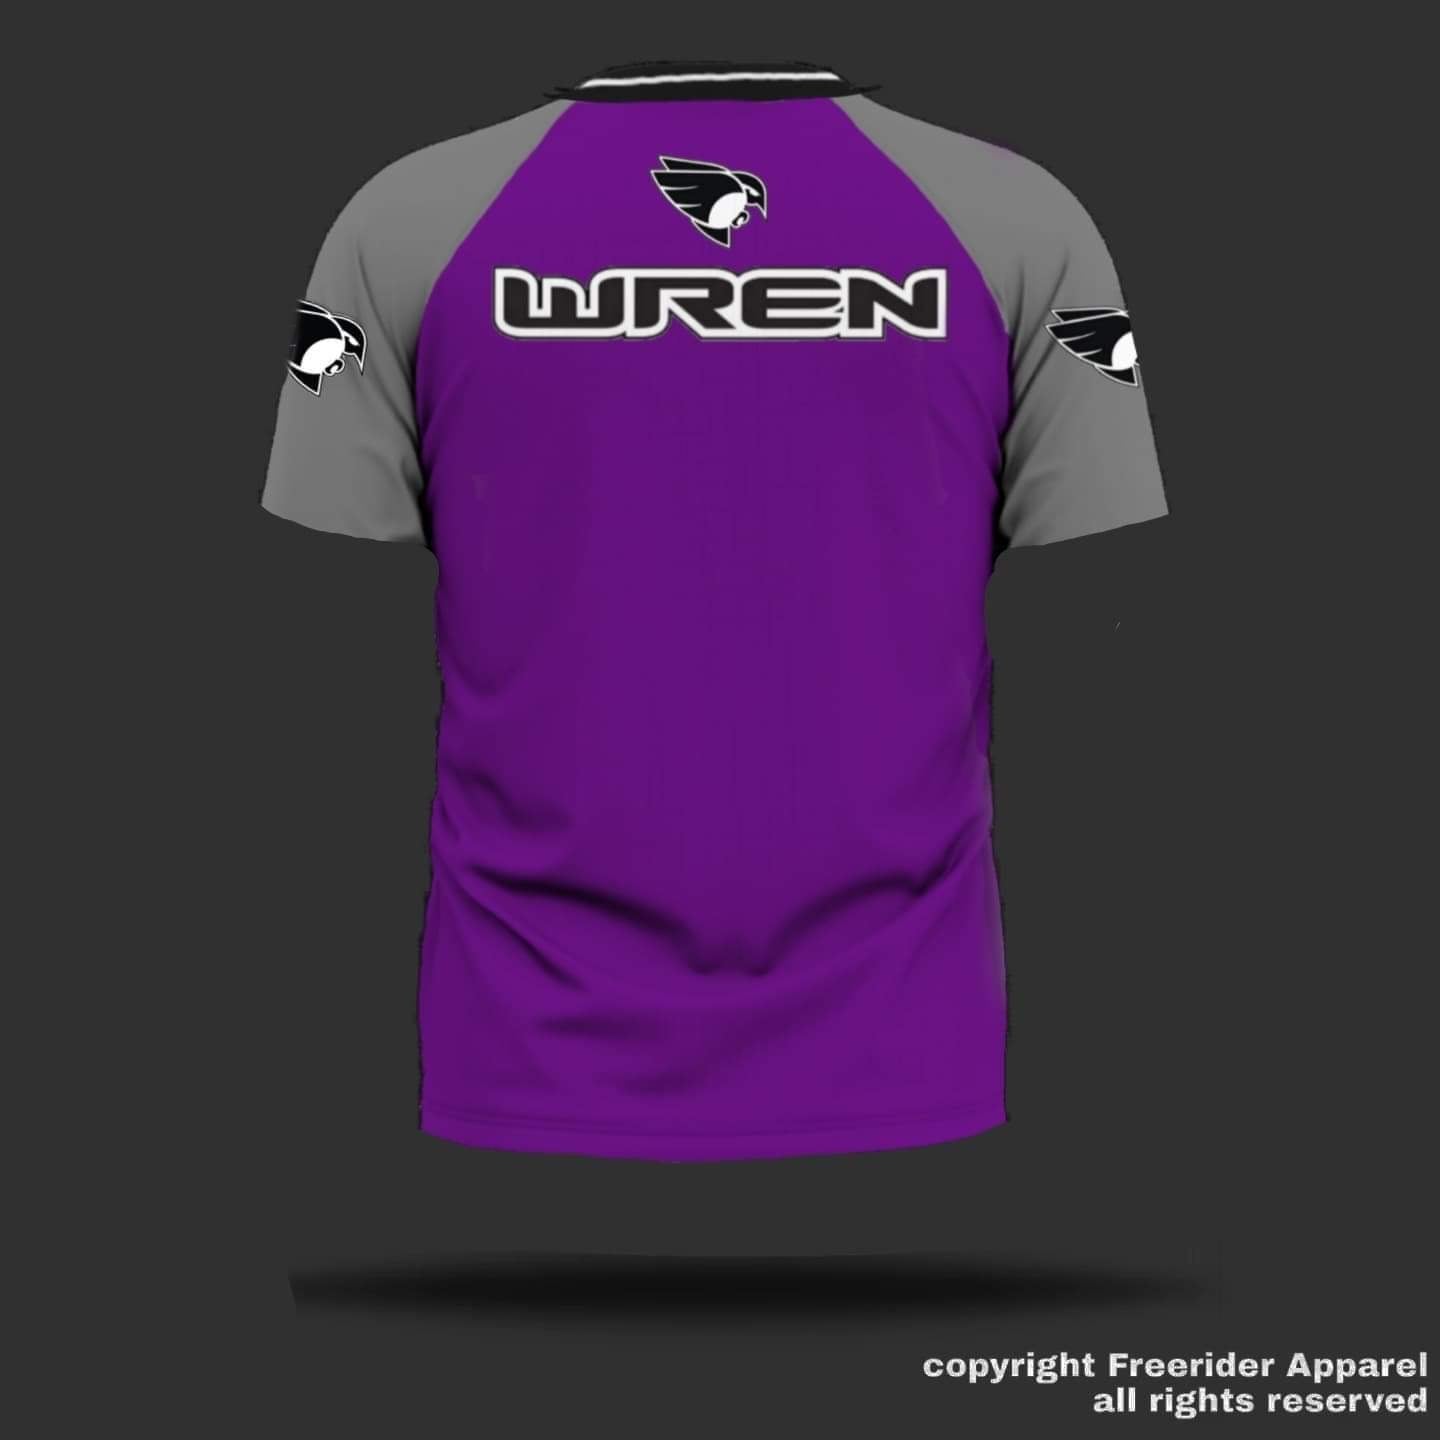 WREN Men's Short Sleeve Jersey - Purple/Grey Raglan